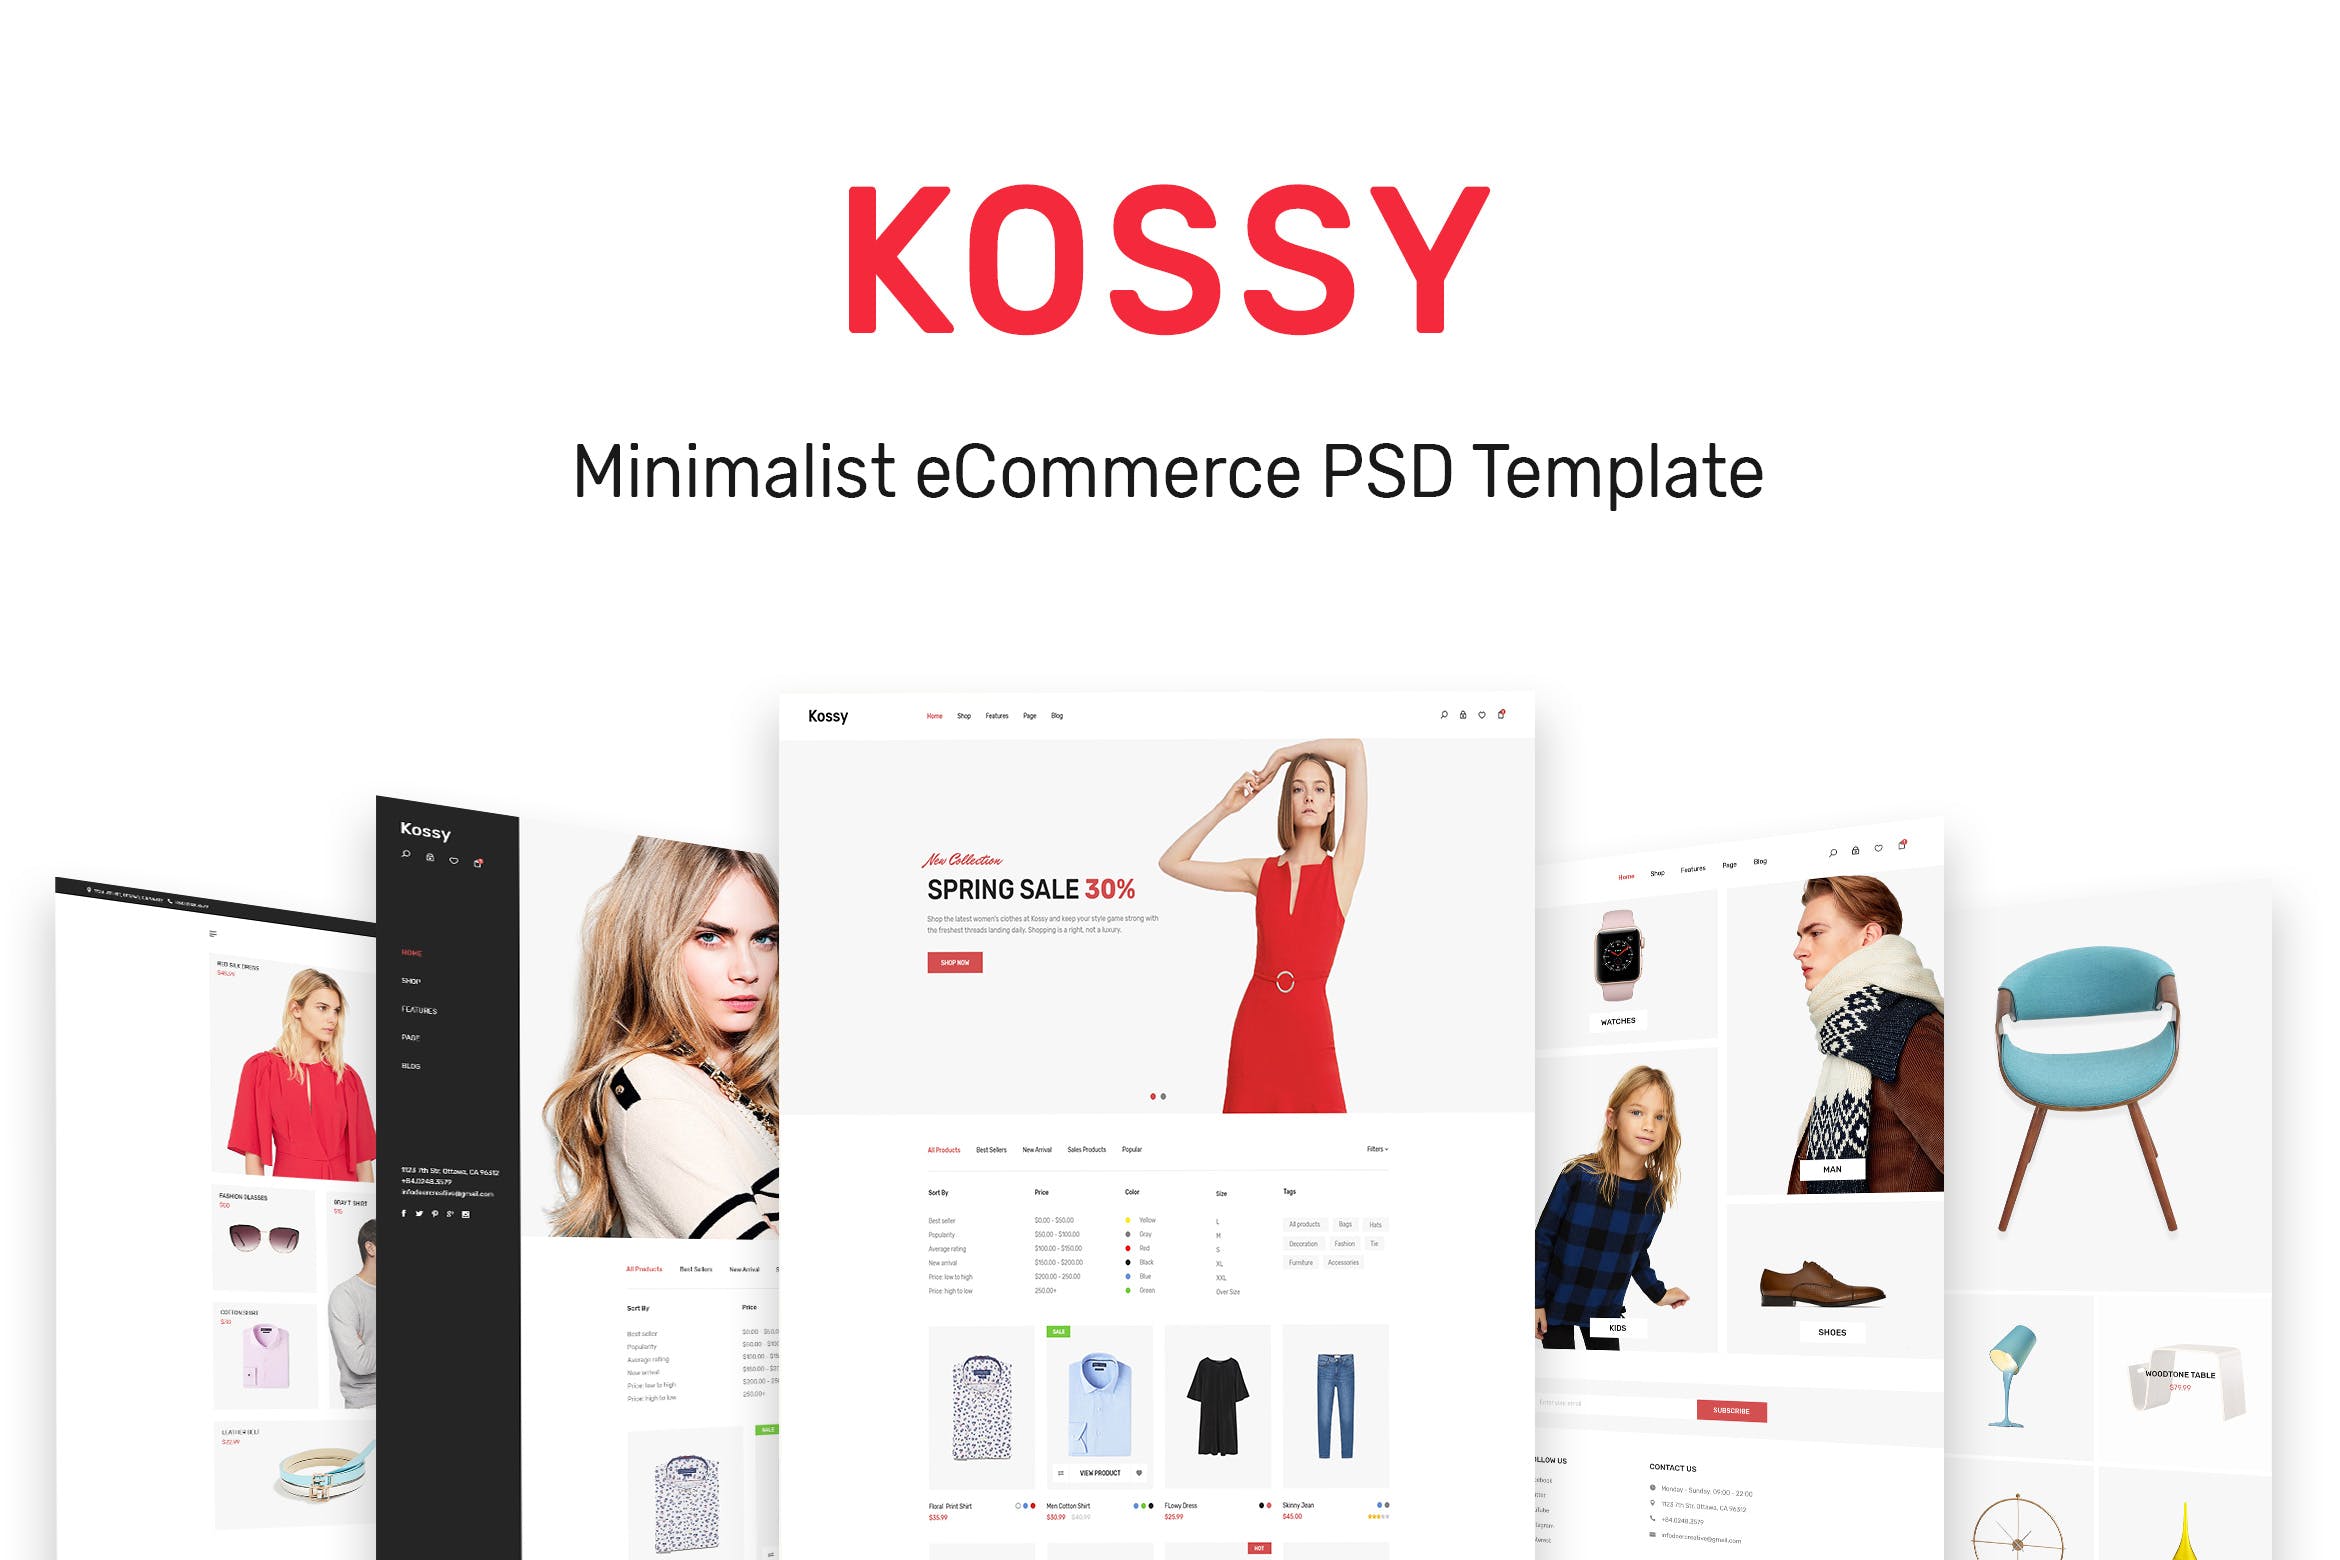 极简设计风格网上商城平台设计PSD模板 Kossy | Minimalist eCommerce PSD Template插图